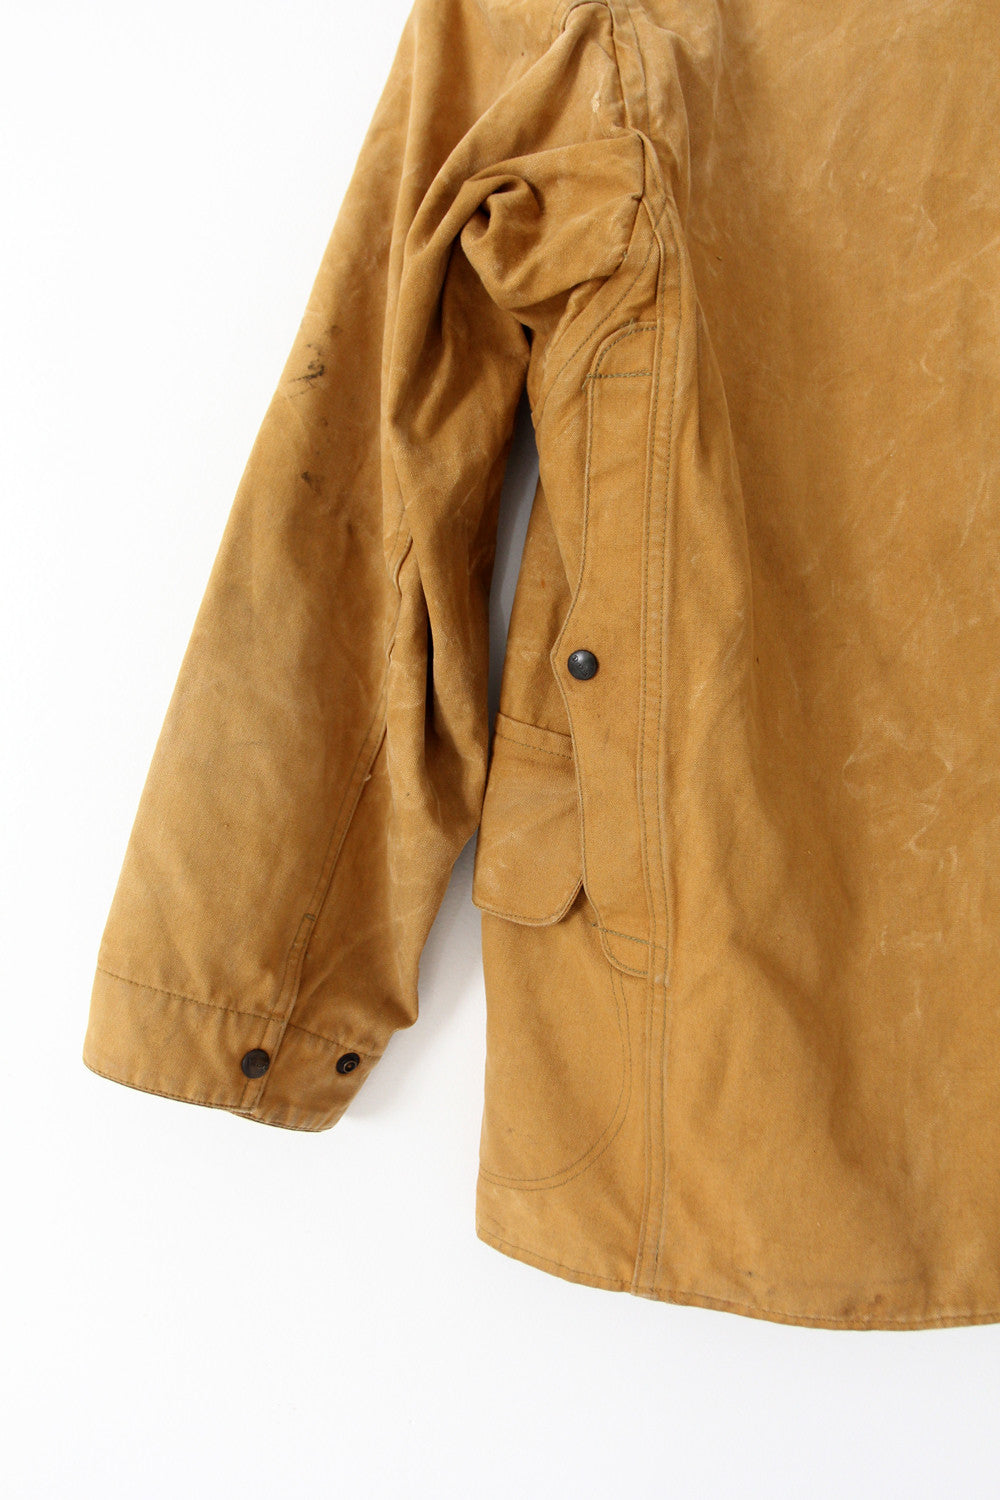 30s Duxbak hunting coat